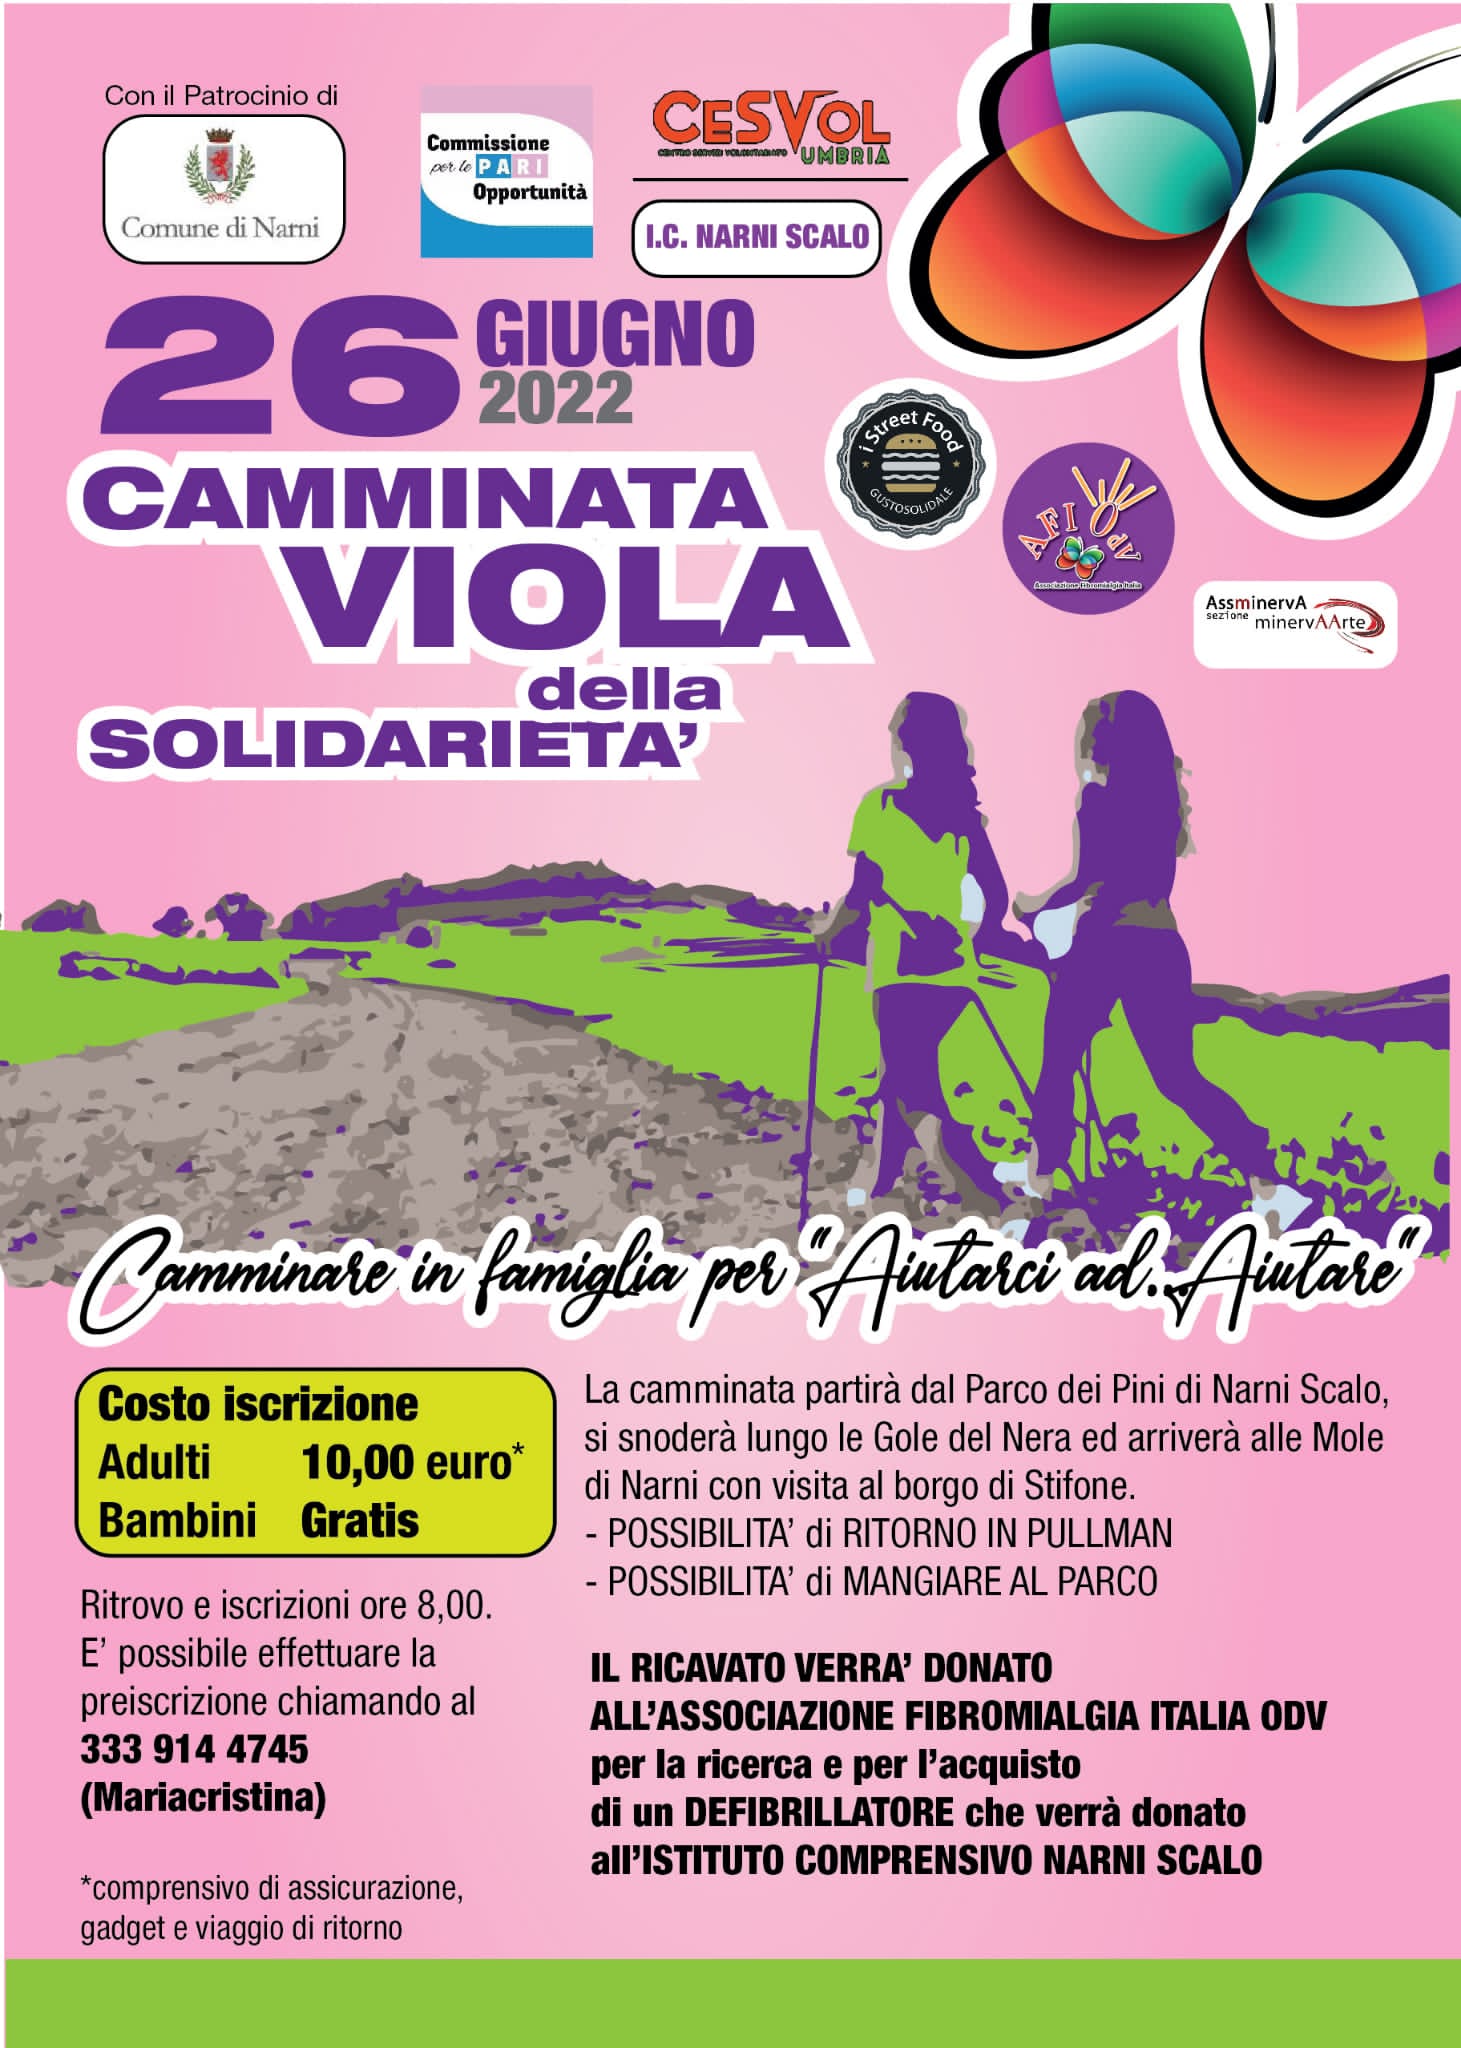 ……. 26 Giugno 2022 ……. “Camminata Viola della Solidarietà”